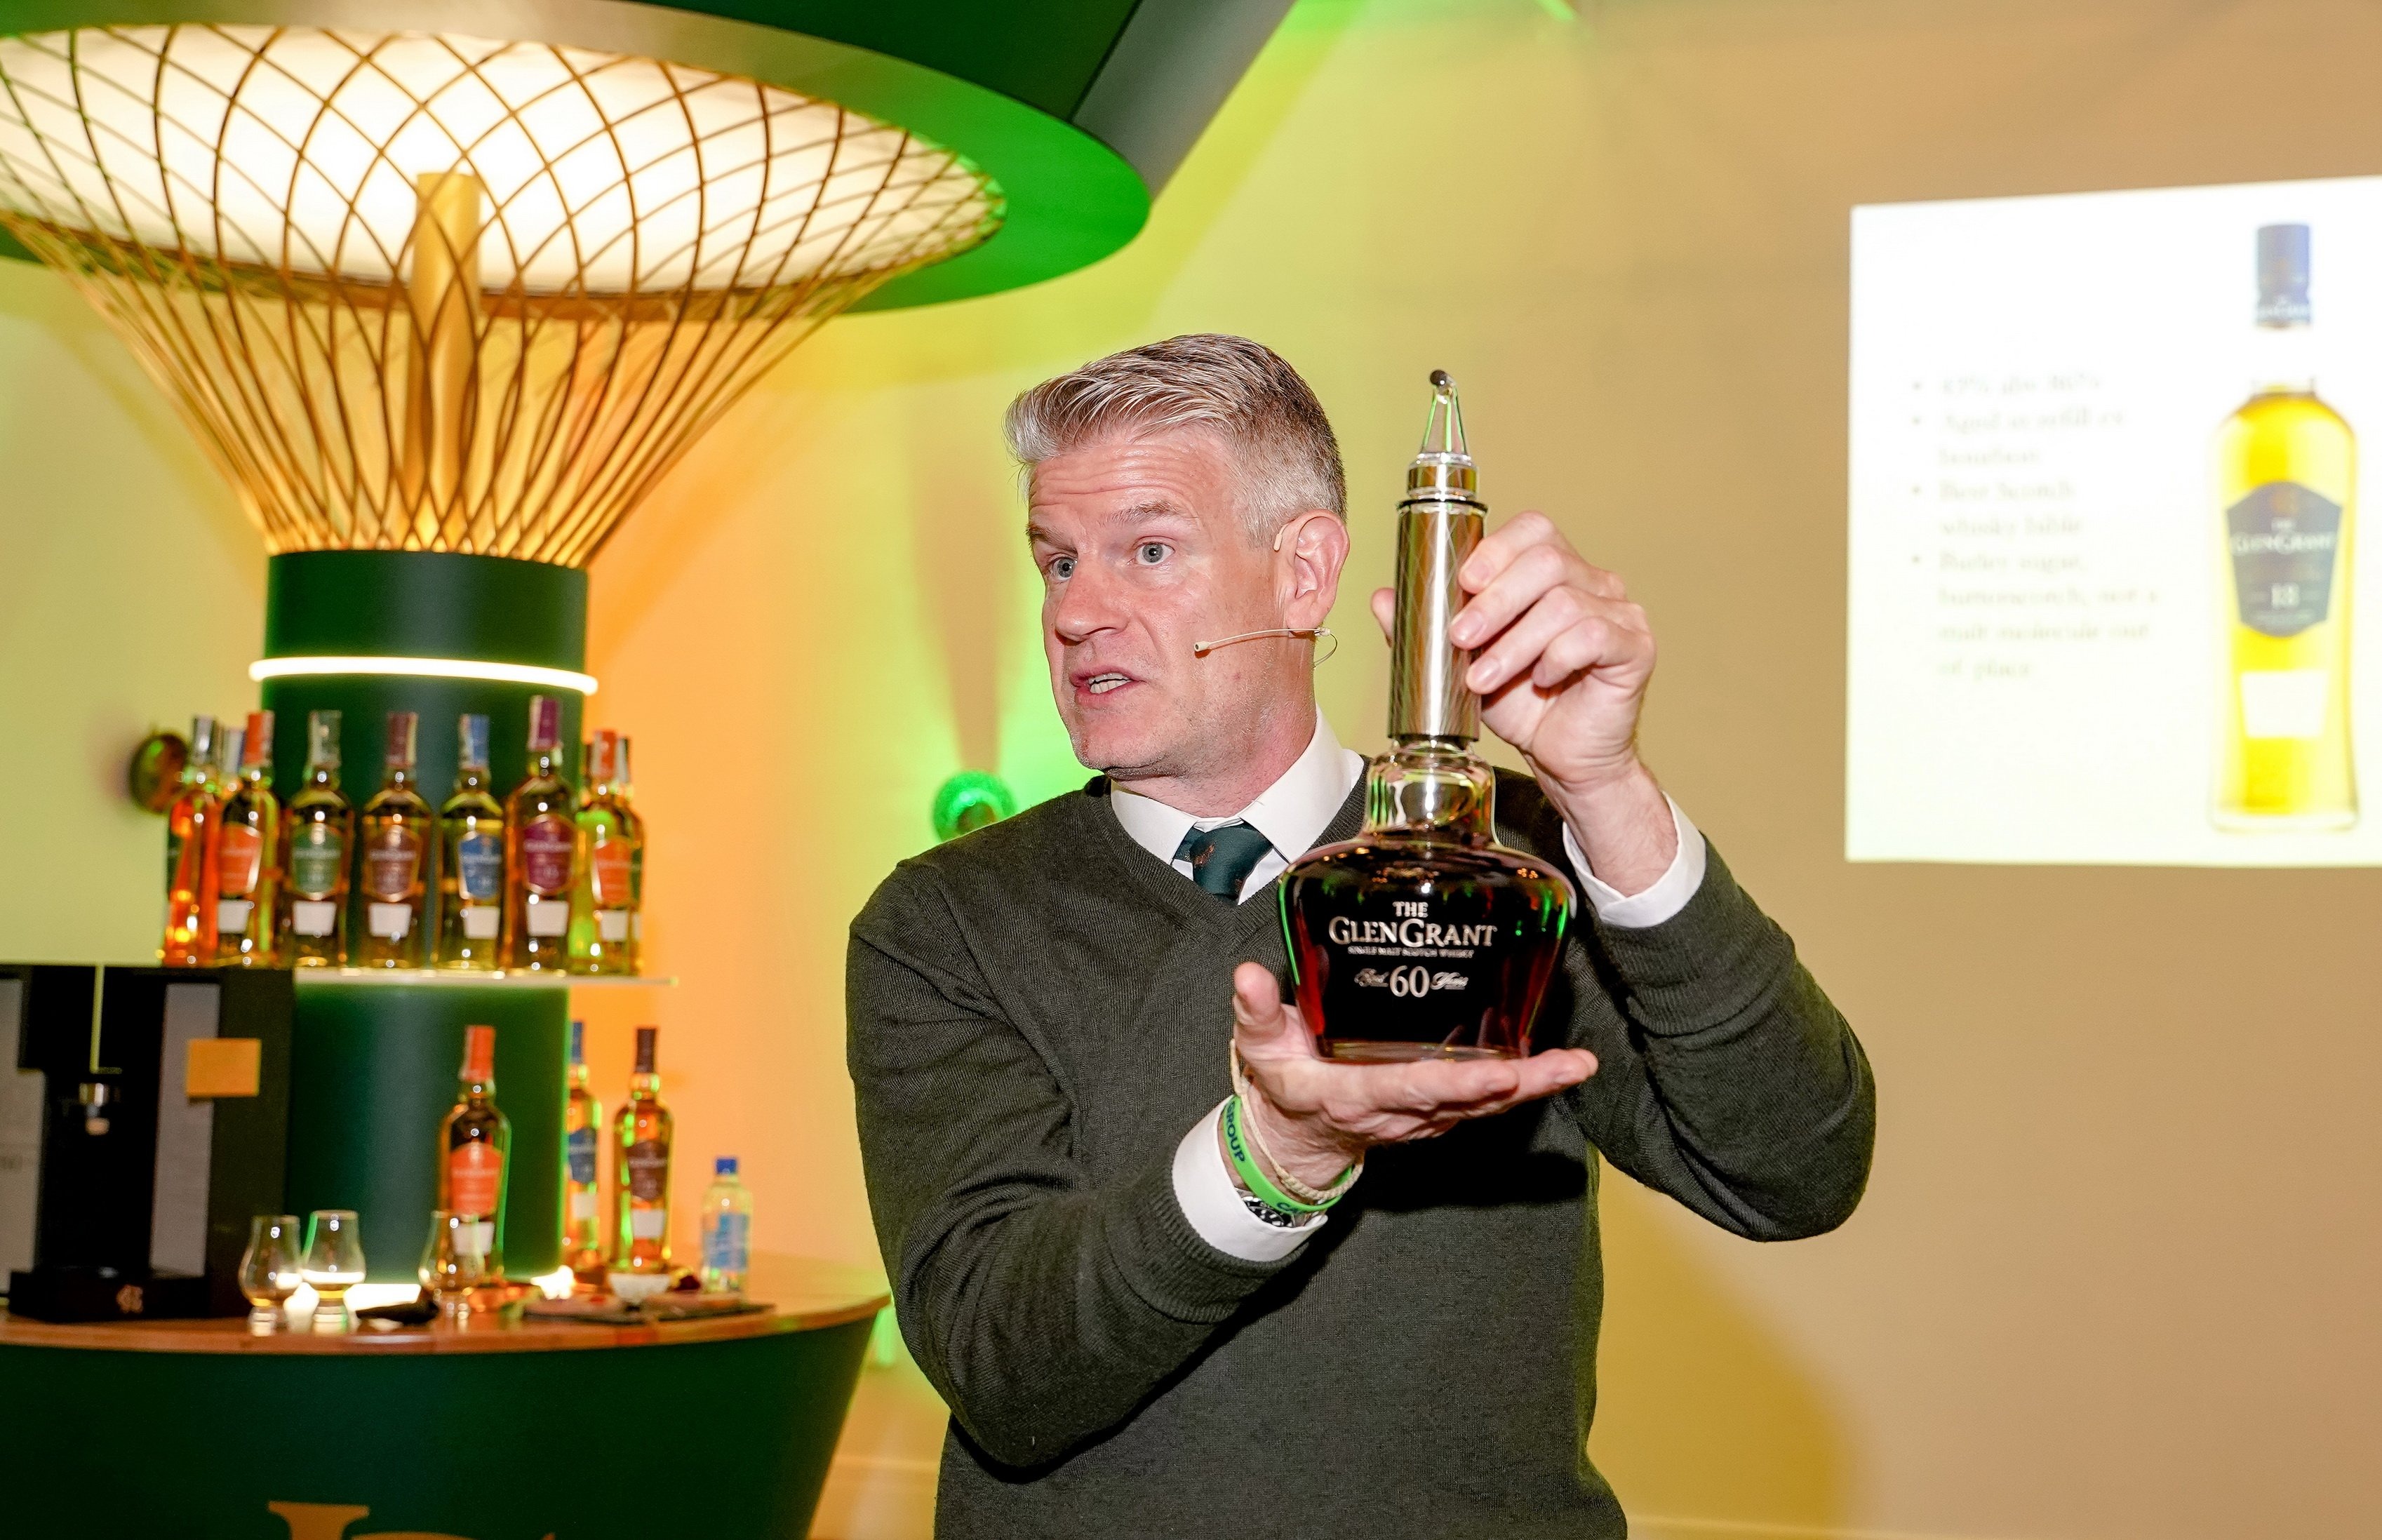 Дестилерията The Glen Grant грабна вниманието на българското уиски общество...